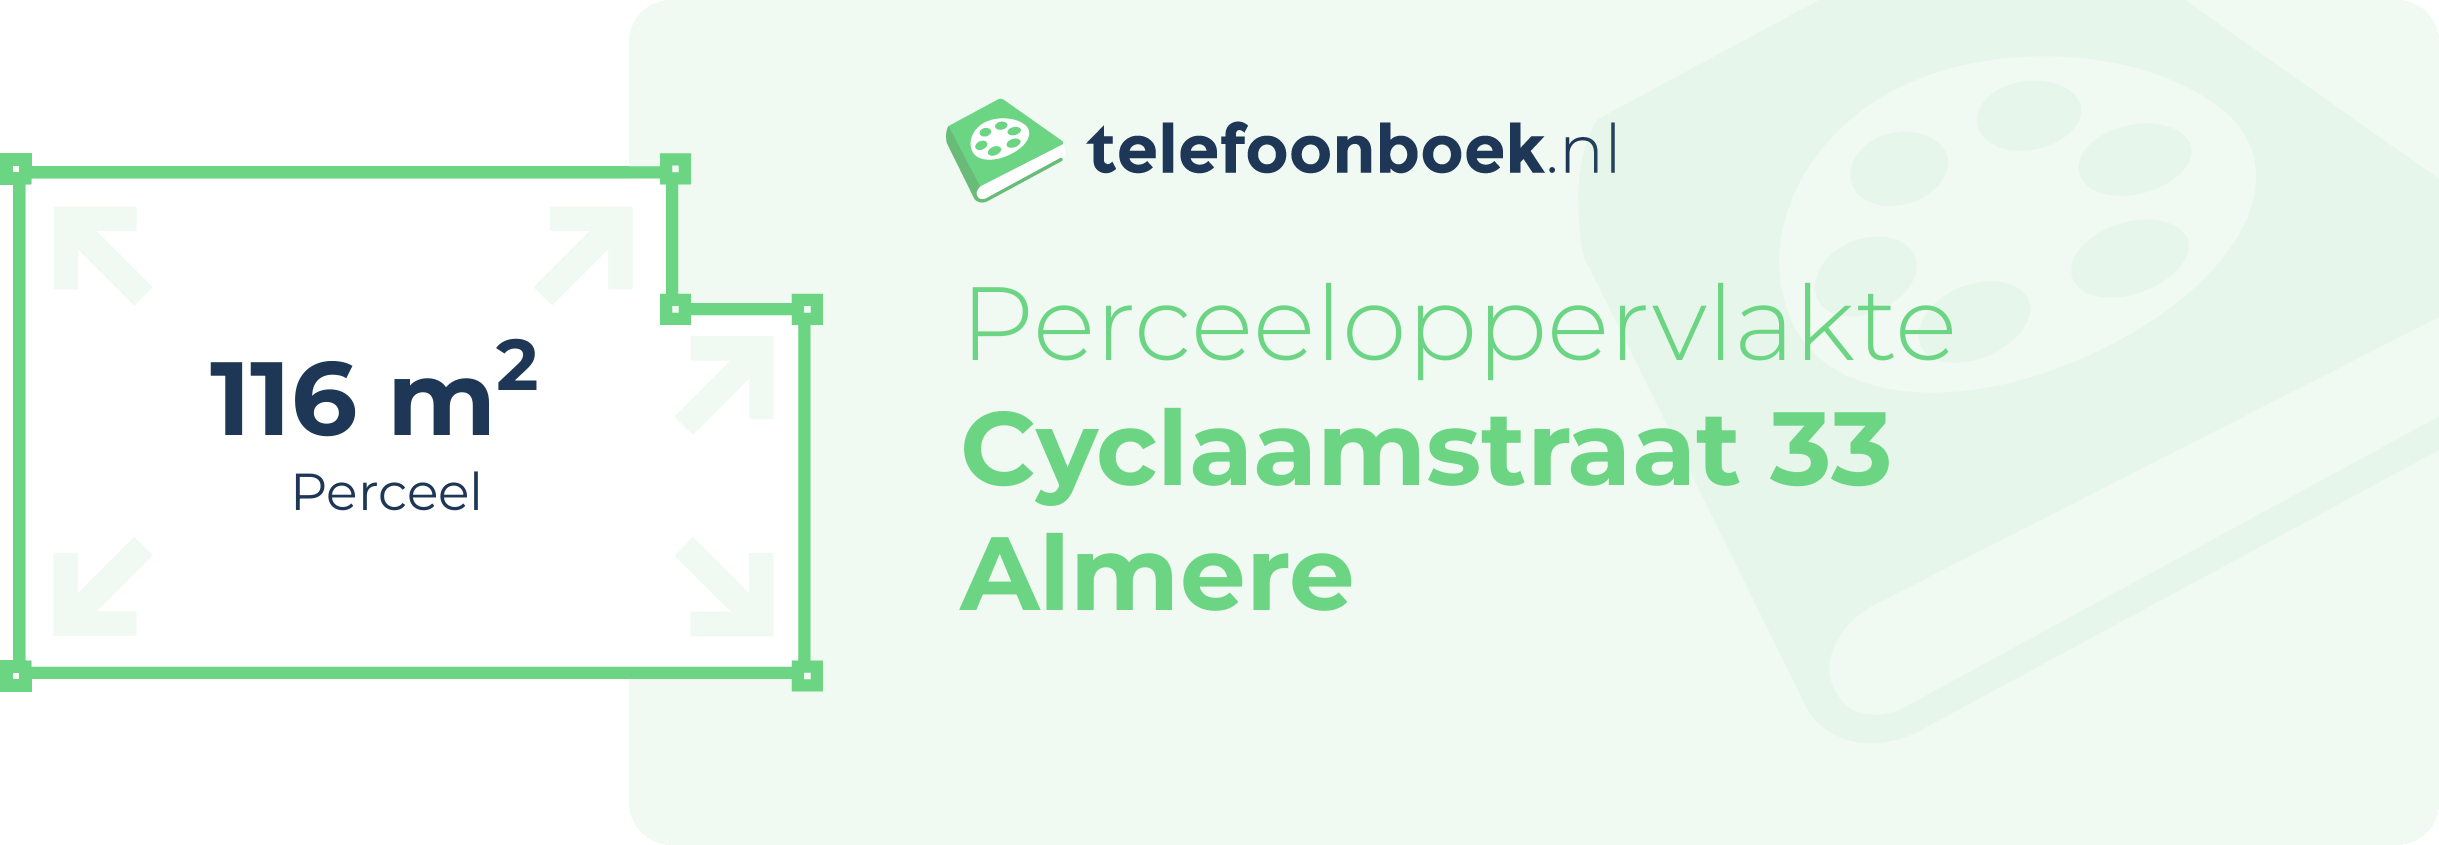 Perceeloppervlakte Cyclaamstraat 33 Almere